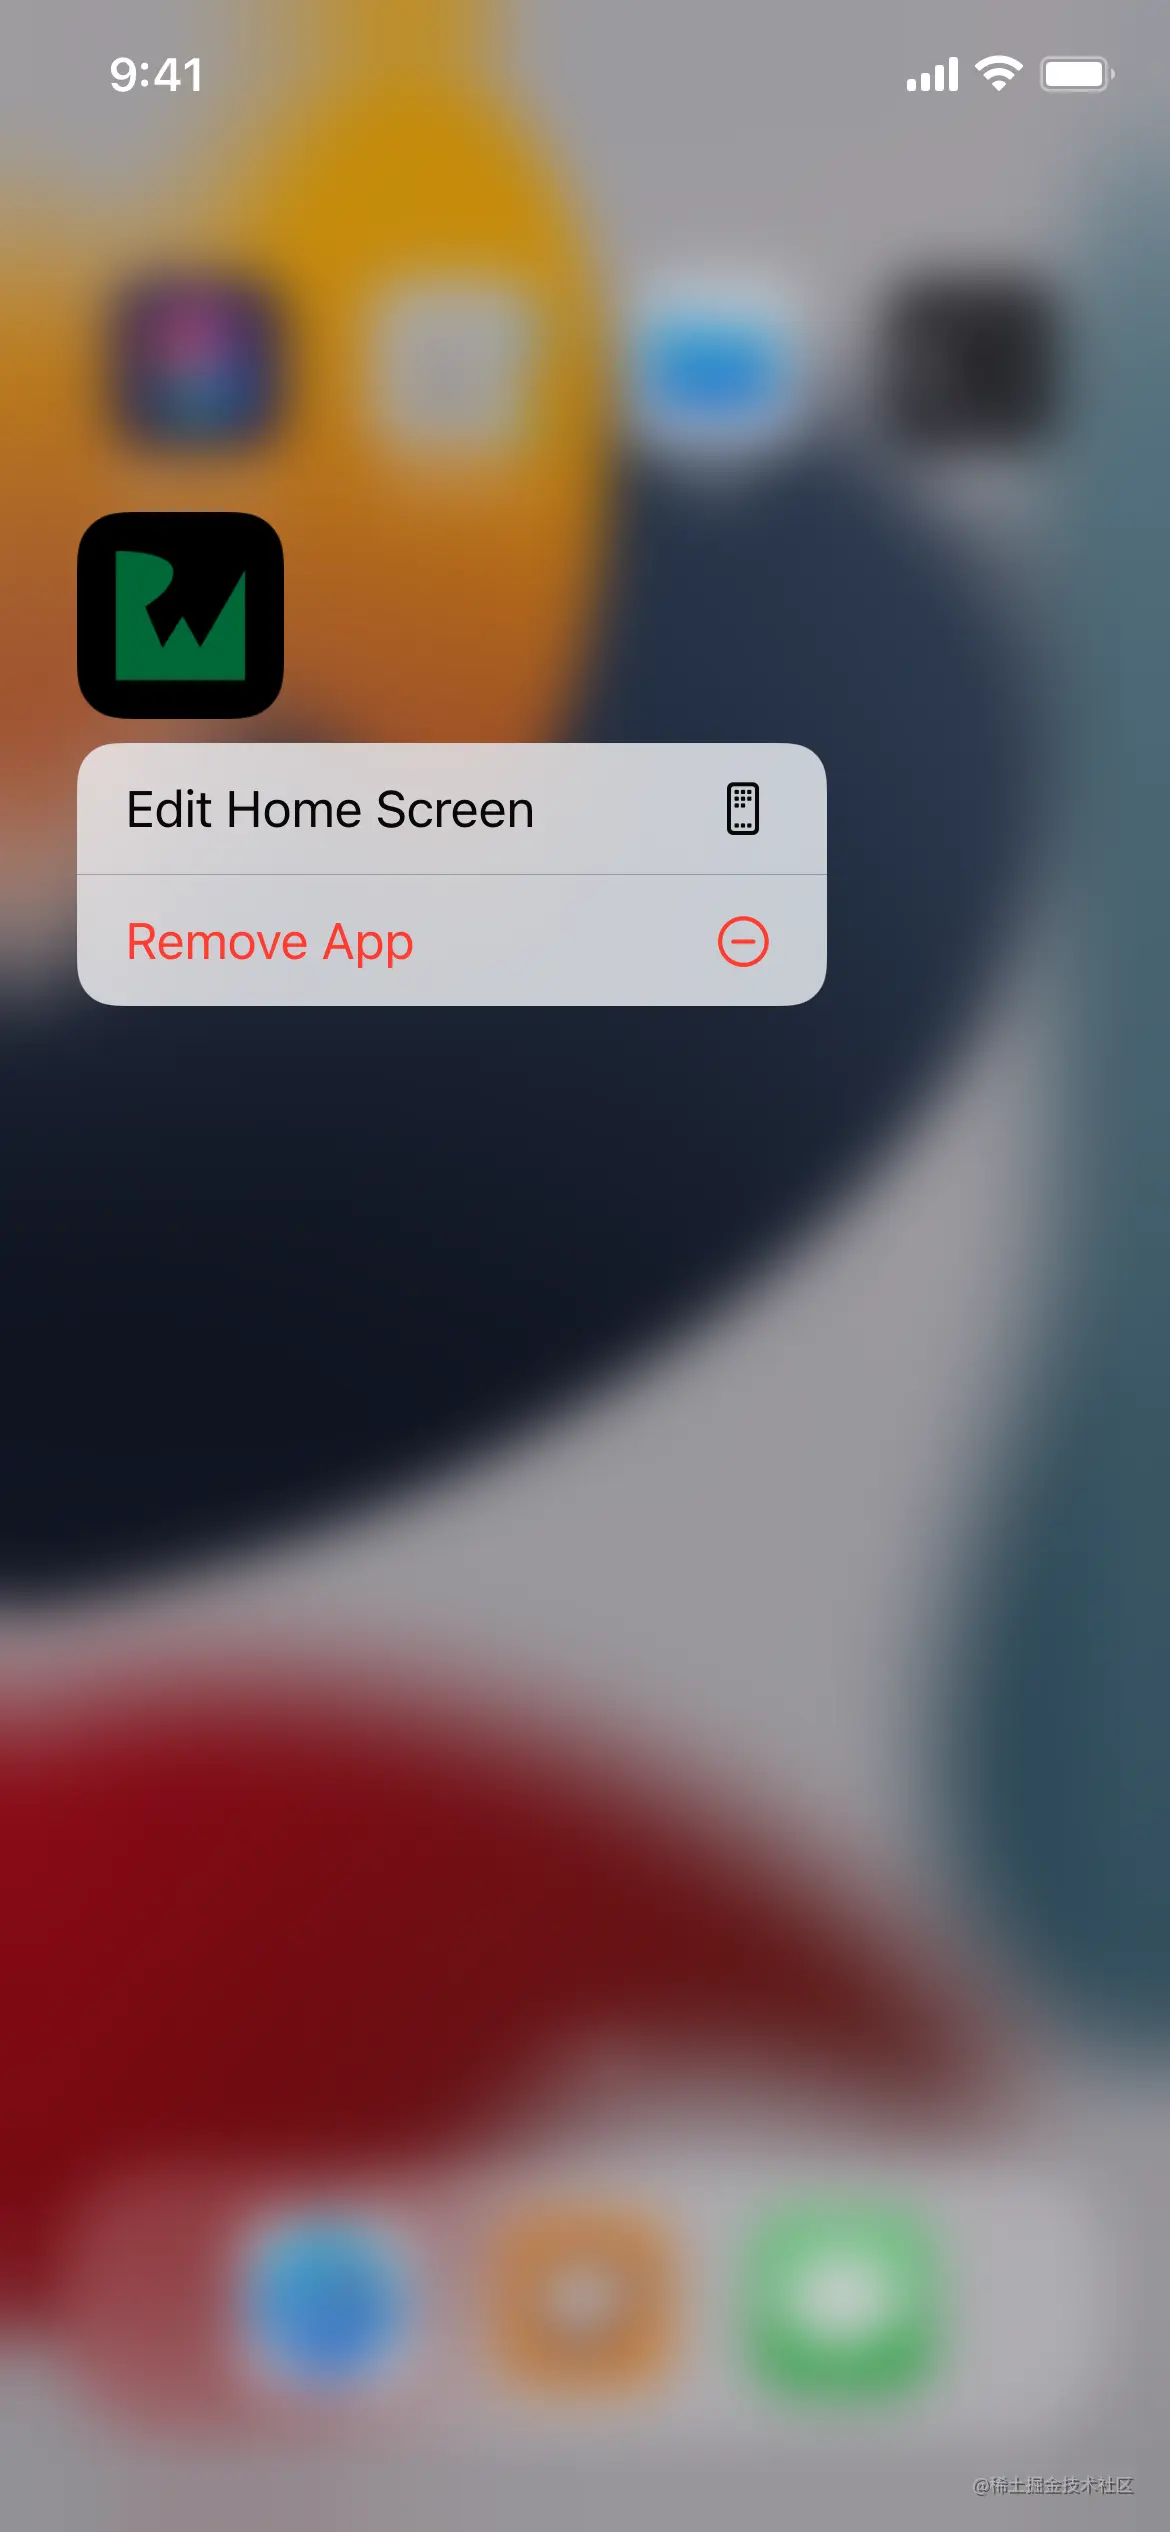 长按主屏幕上的“Note Buddy”应用程序图标后出现的菜单，其中包含“编辑”主屏幕或“删除”应用程序的选项。